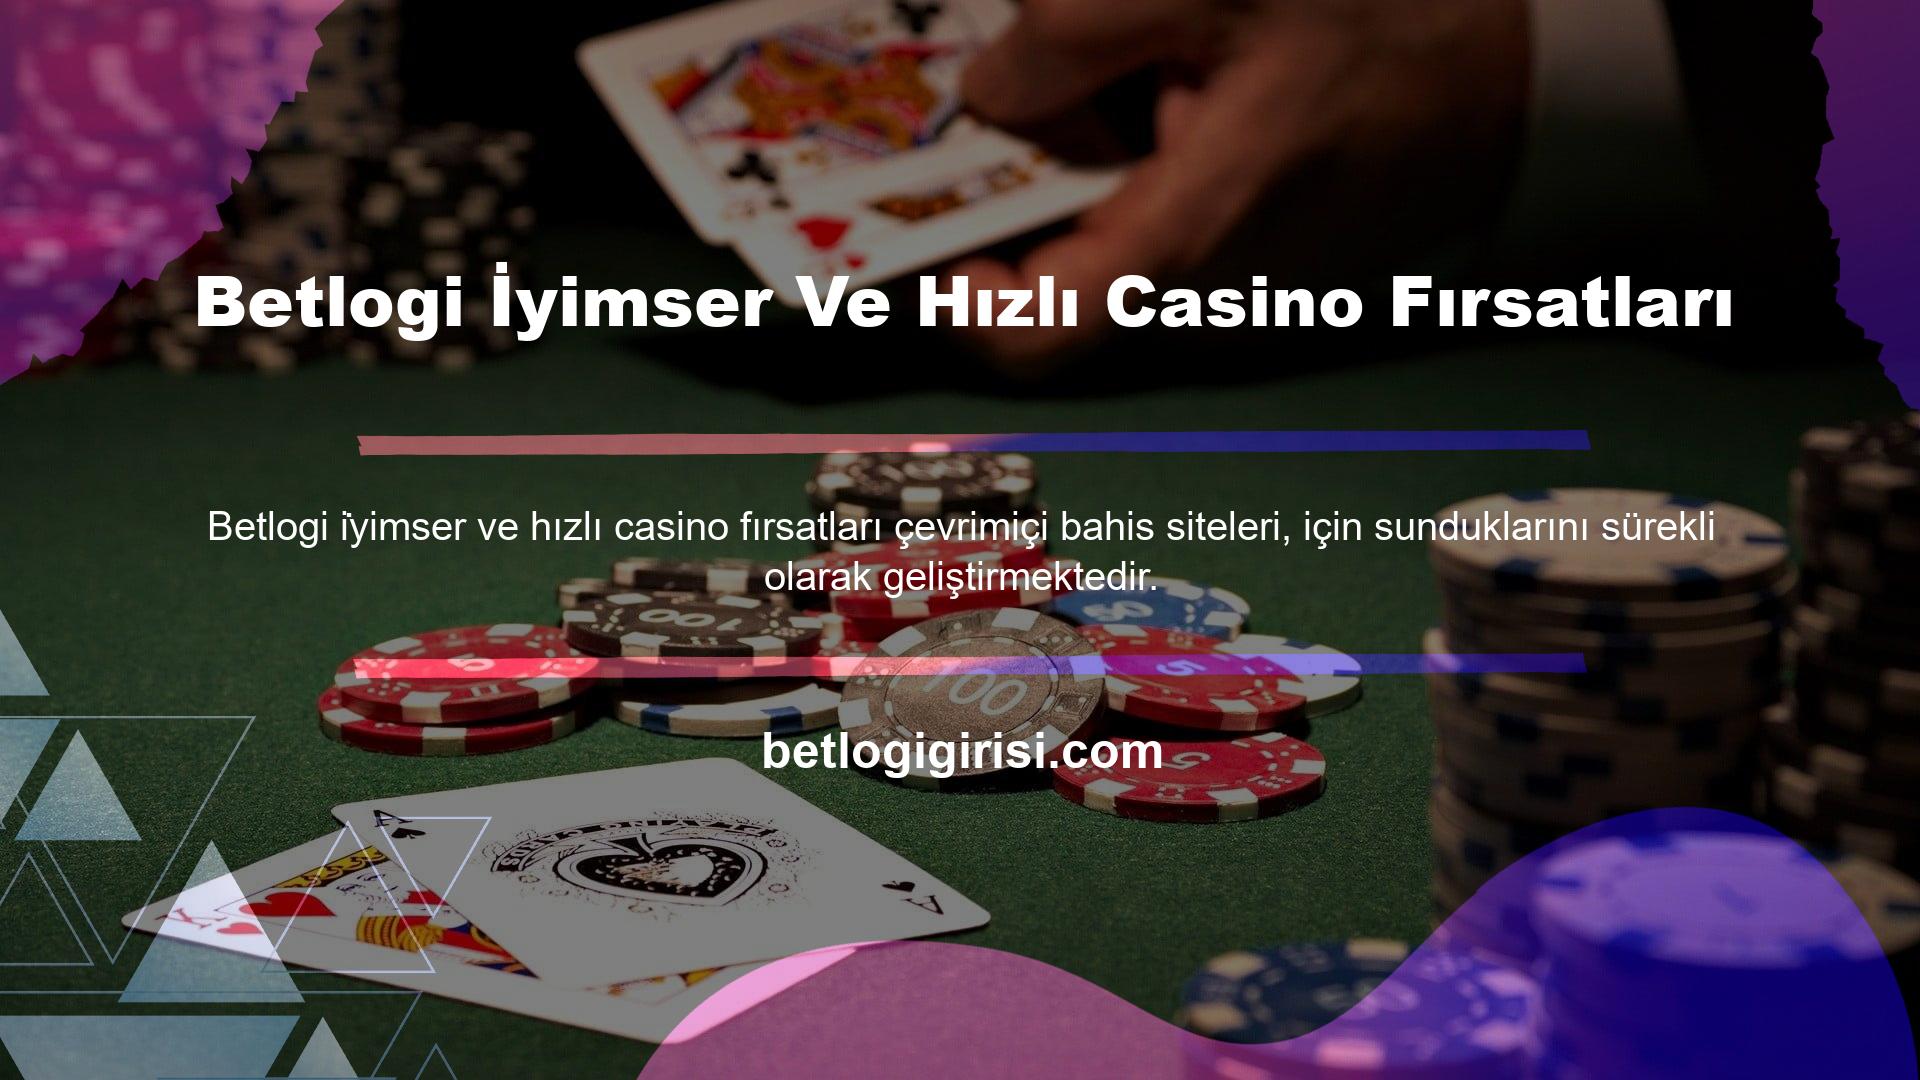 Oyunculara sunulan bahis seçenekleri arasında Betlogi ve Casino Betlogi yanı sıra İndirimli Casino da bulunmaktadır